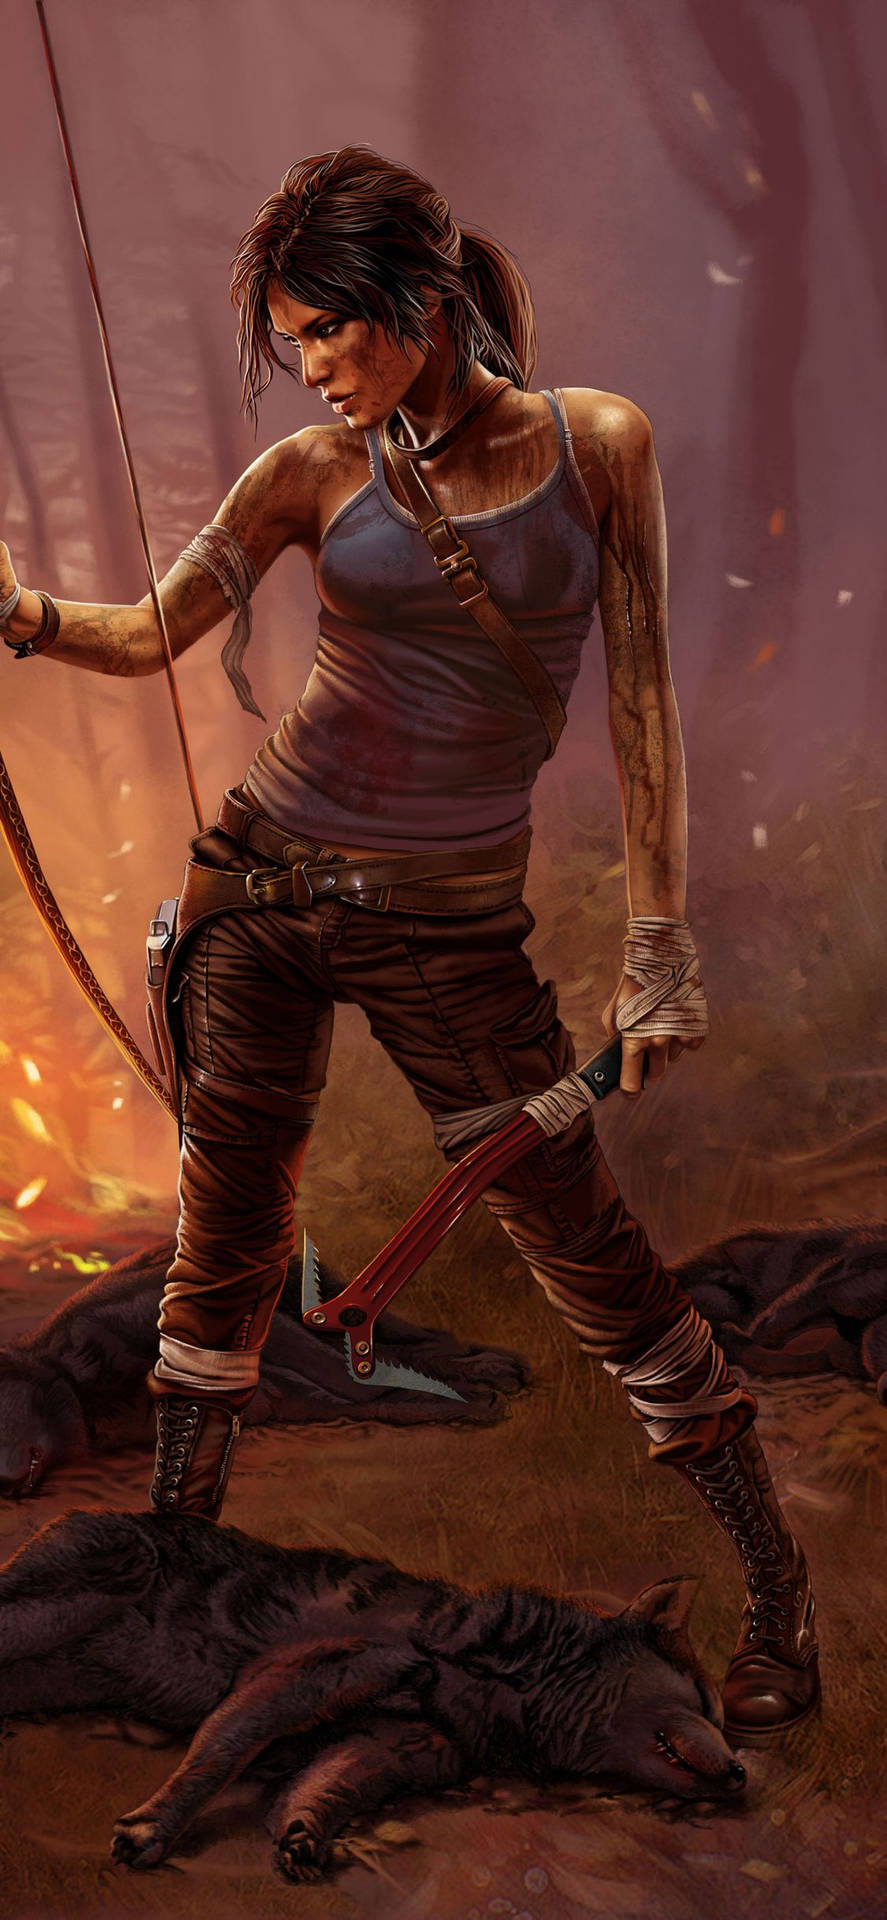 Genießedas Abenteuer, Lara Croft Auf Deinem Iphone Zu Sein! Wallpaper